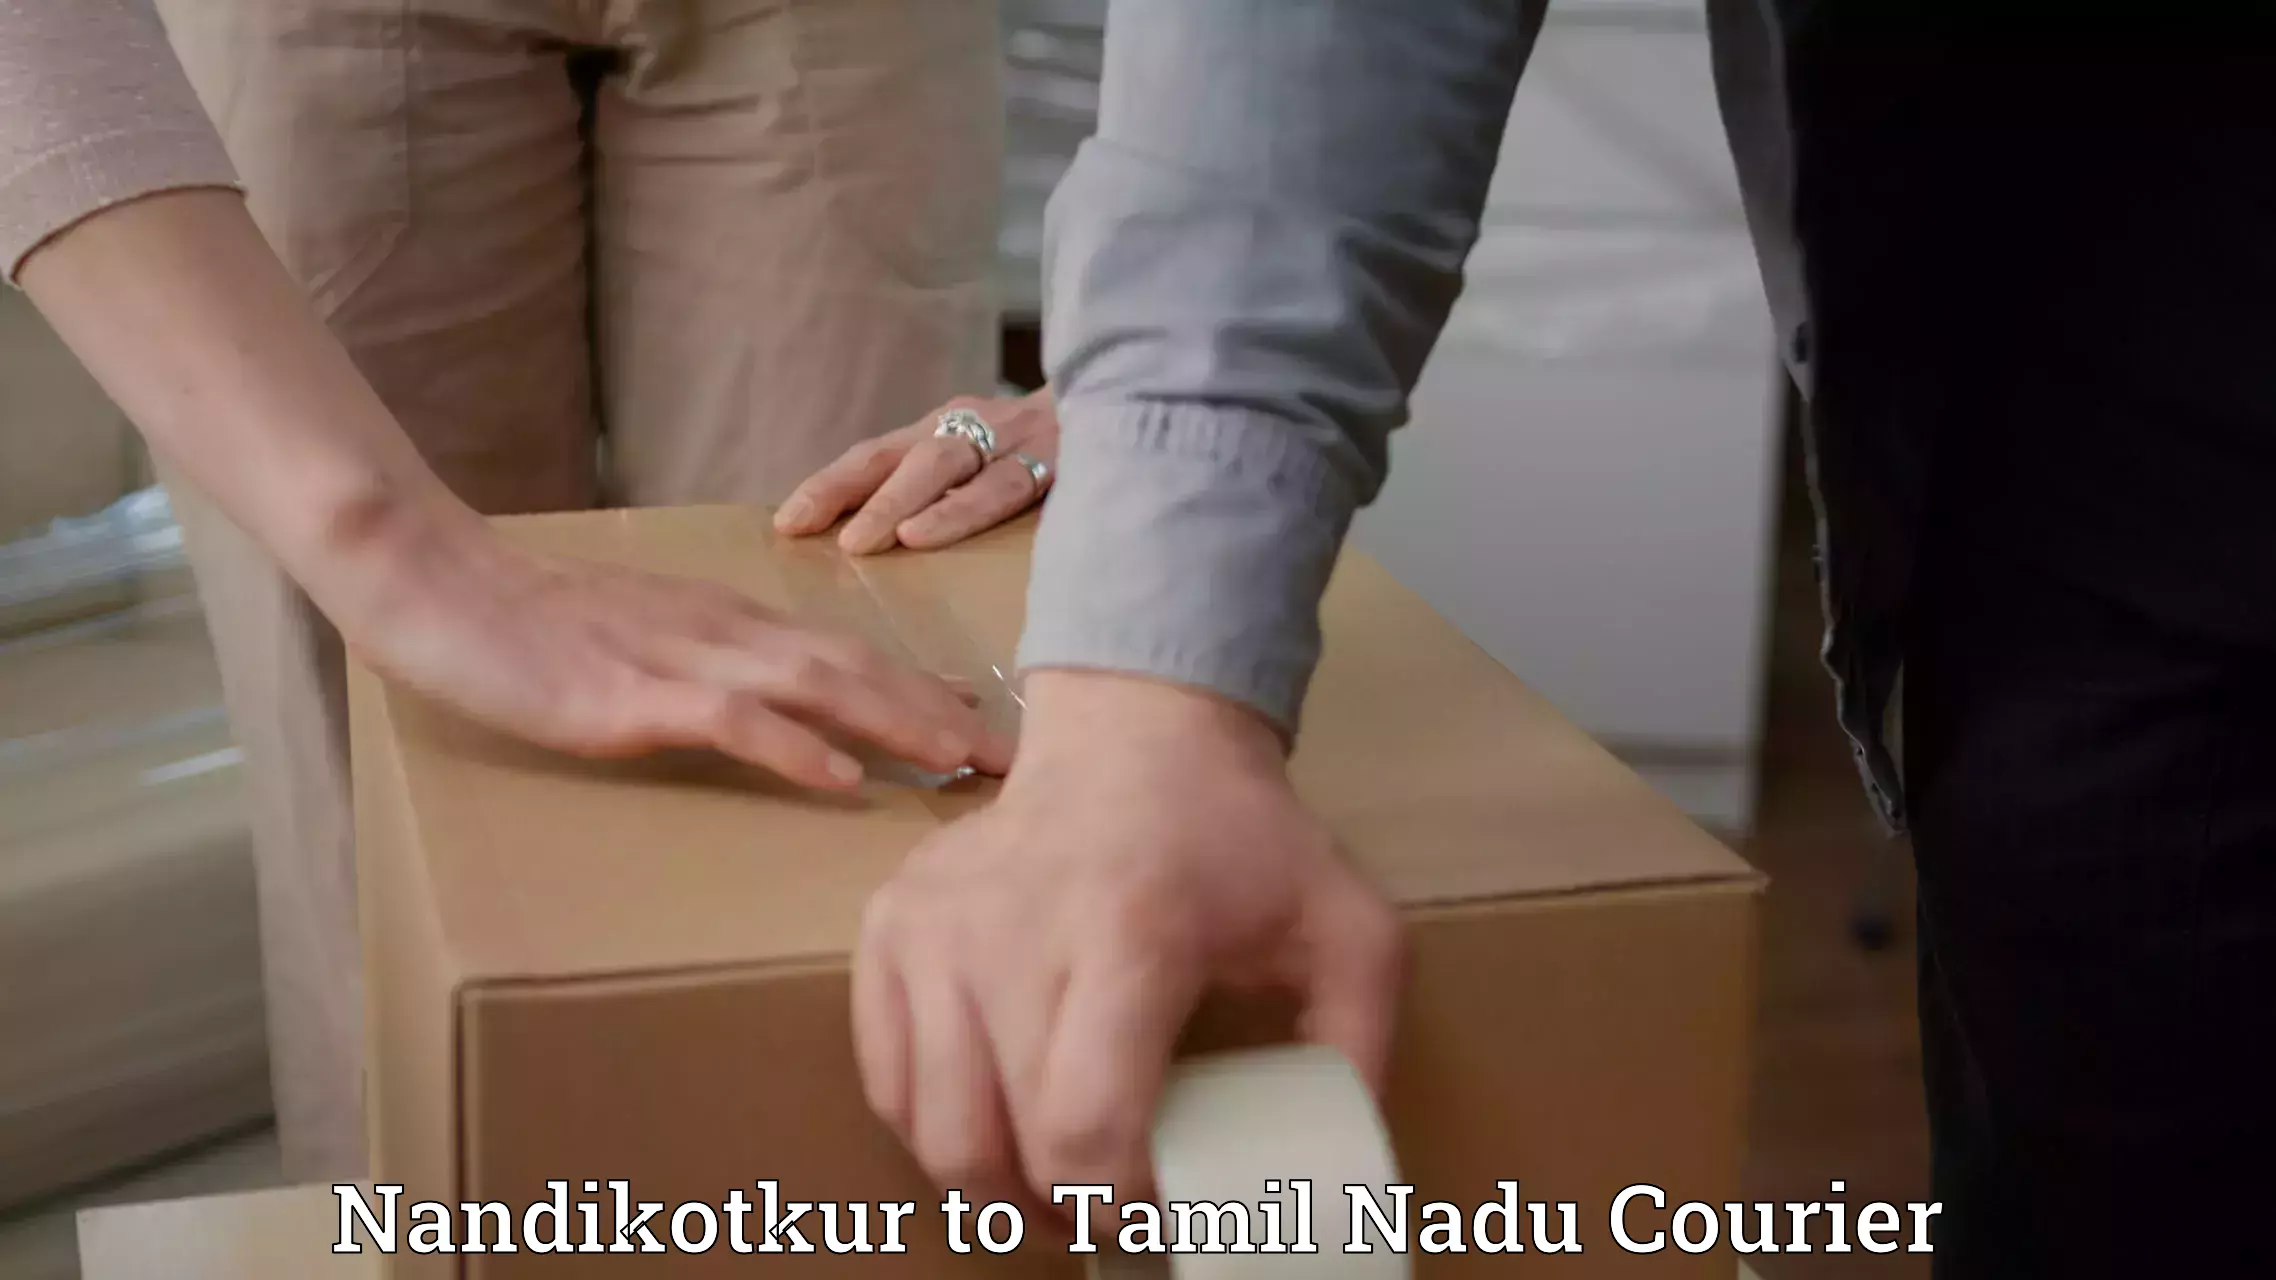 24/7 shipping services Nandikotkur to Tamil Nadu